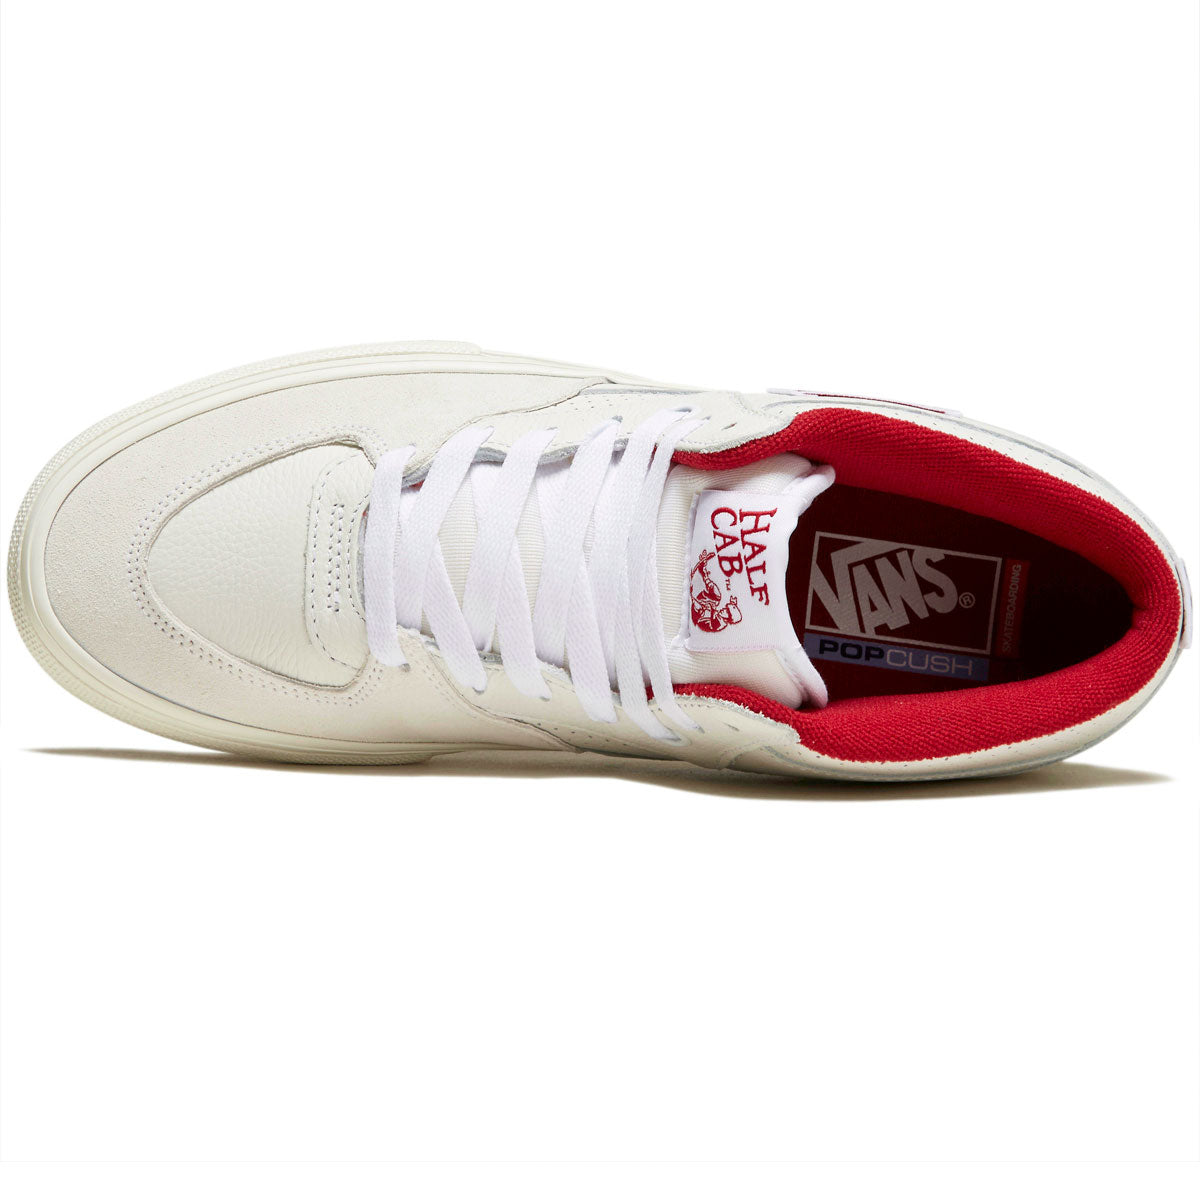 Vans Skate Half Cab Shoes - Vintage Sport White/Red image 3